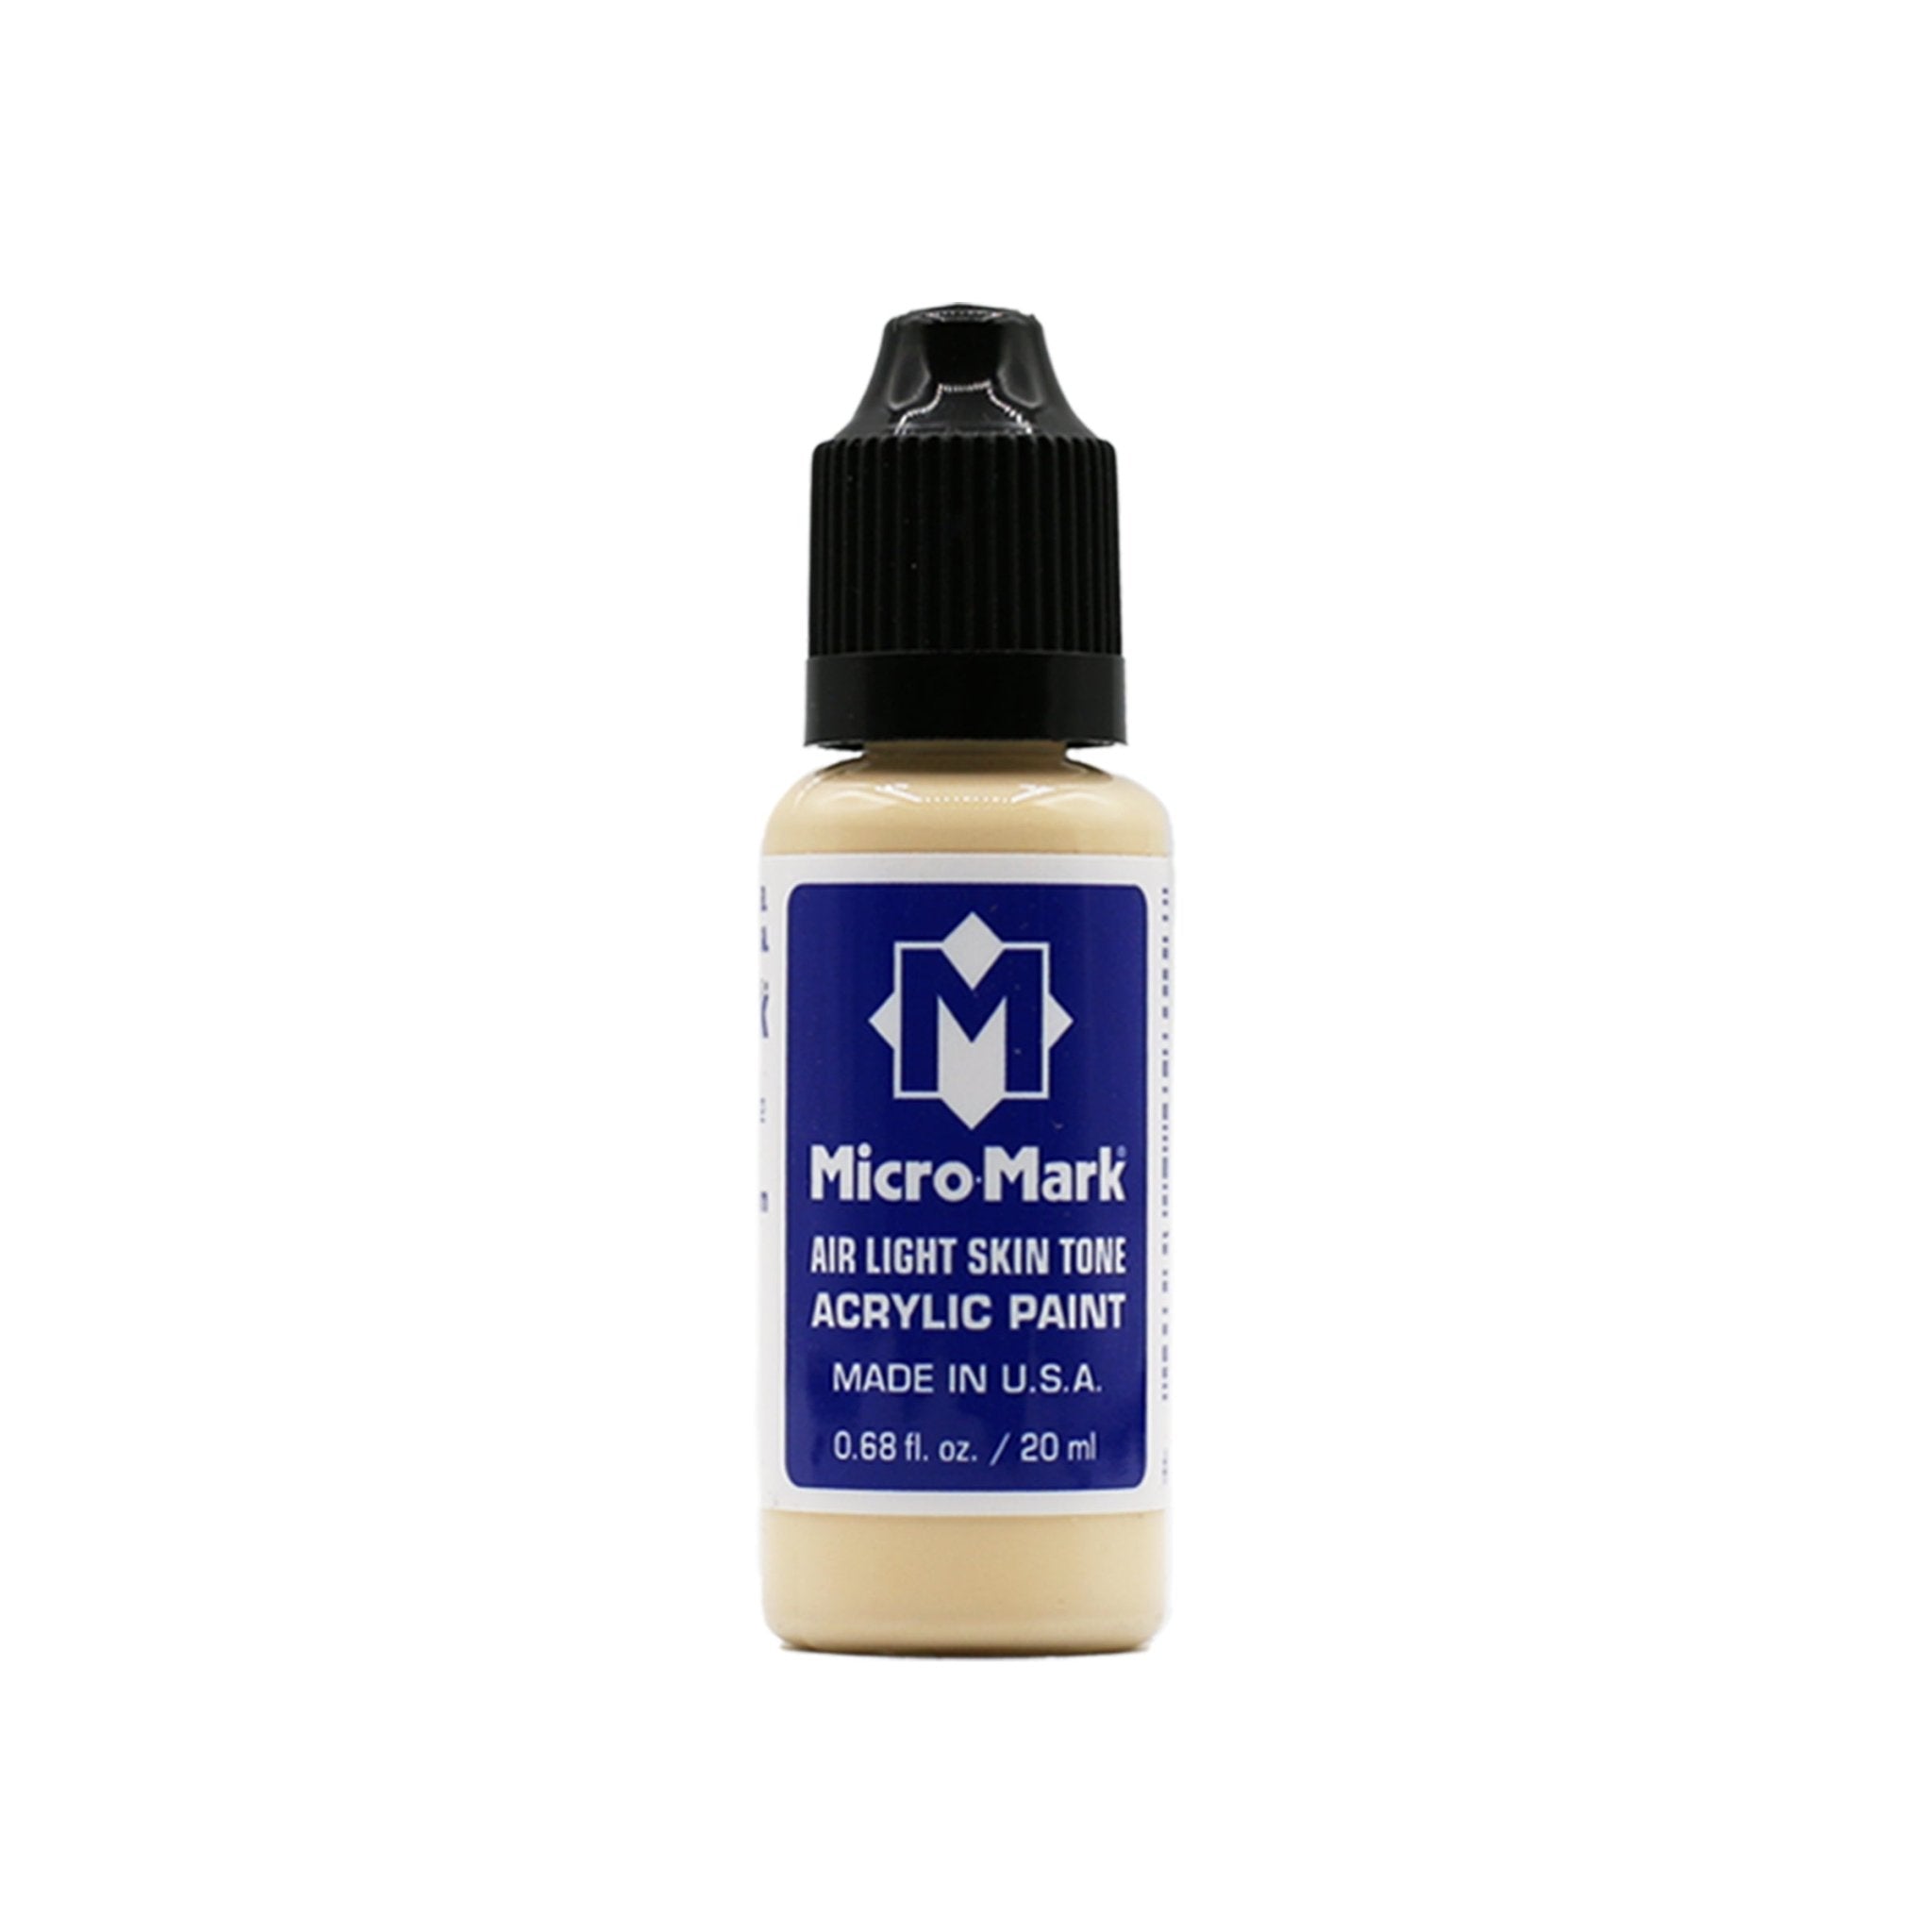 Micro-Mark Air Light Skin Tone Acrylic Paint, 20ml